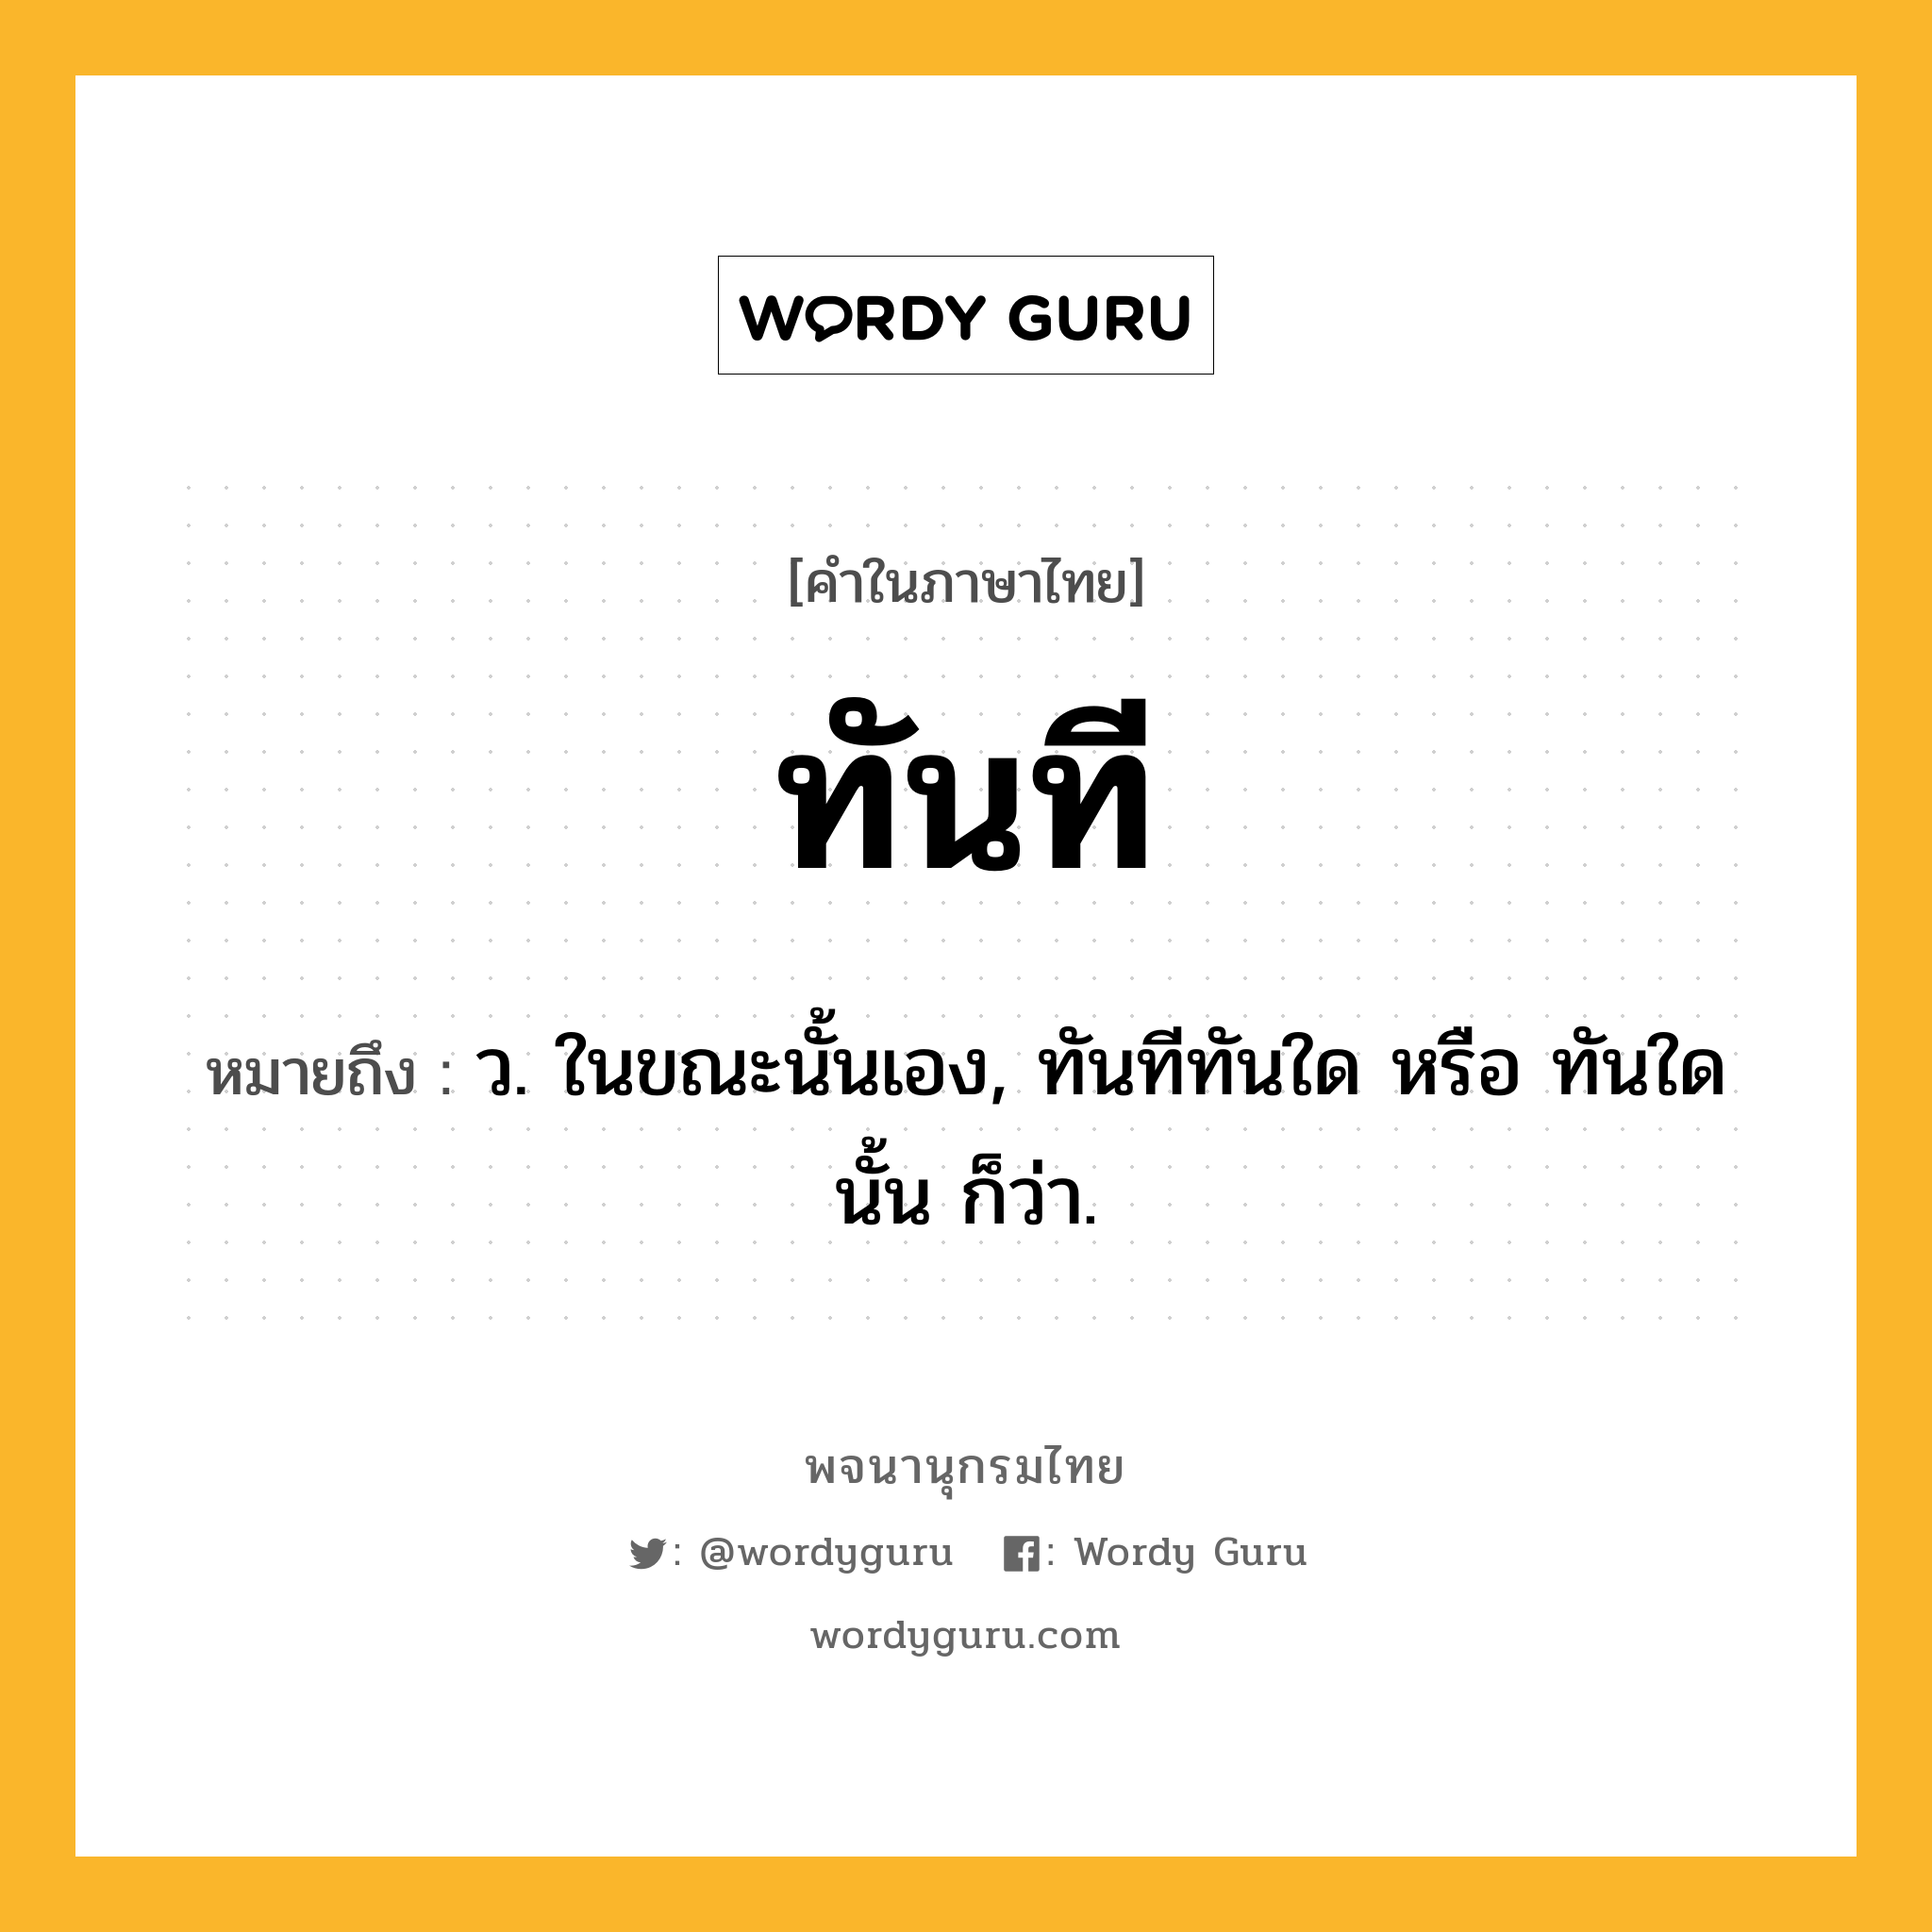 ทันที หมายถึงอะไร?, คำในภาษาไทย ทันที หมายถึง ว. ในขณะนั้นเอง, ทันทีทันใด หรือ ทันใดนั้น ก็ว่า.